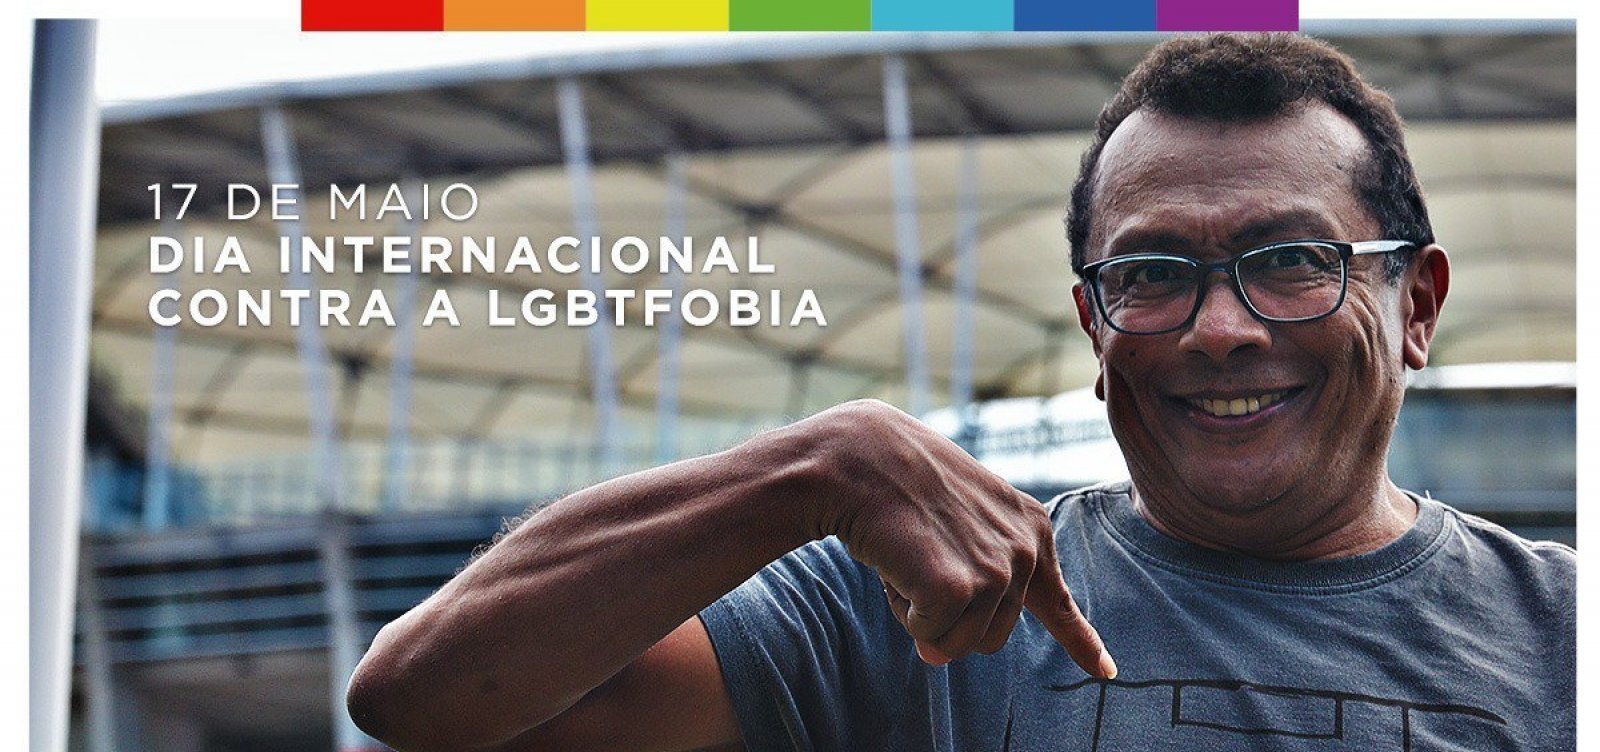 Campanha contra LGBTfobia do Bahia (Divulgação)